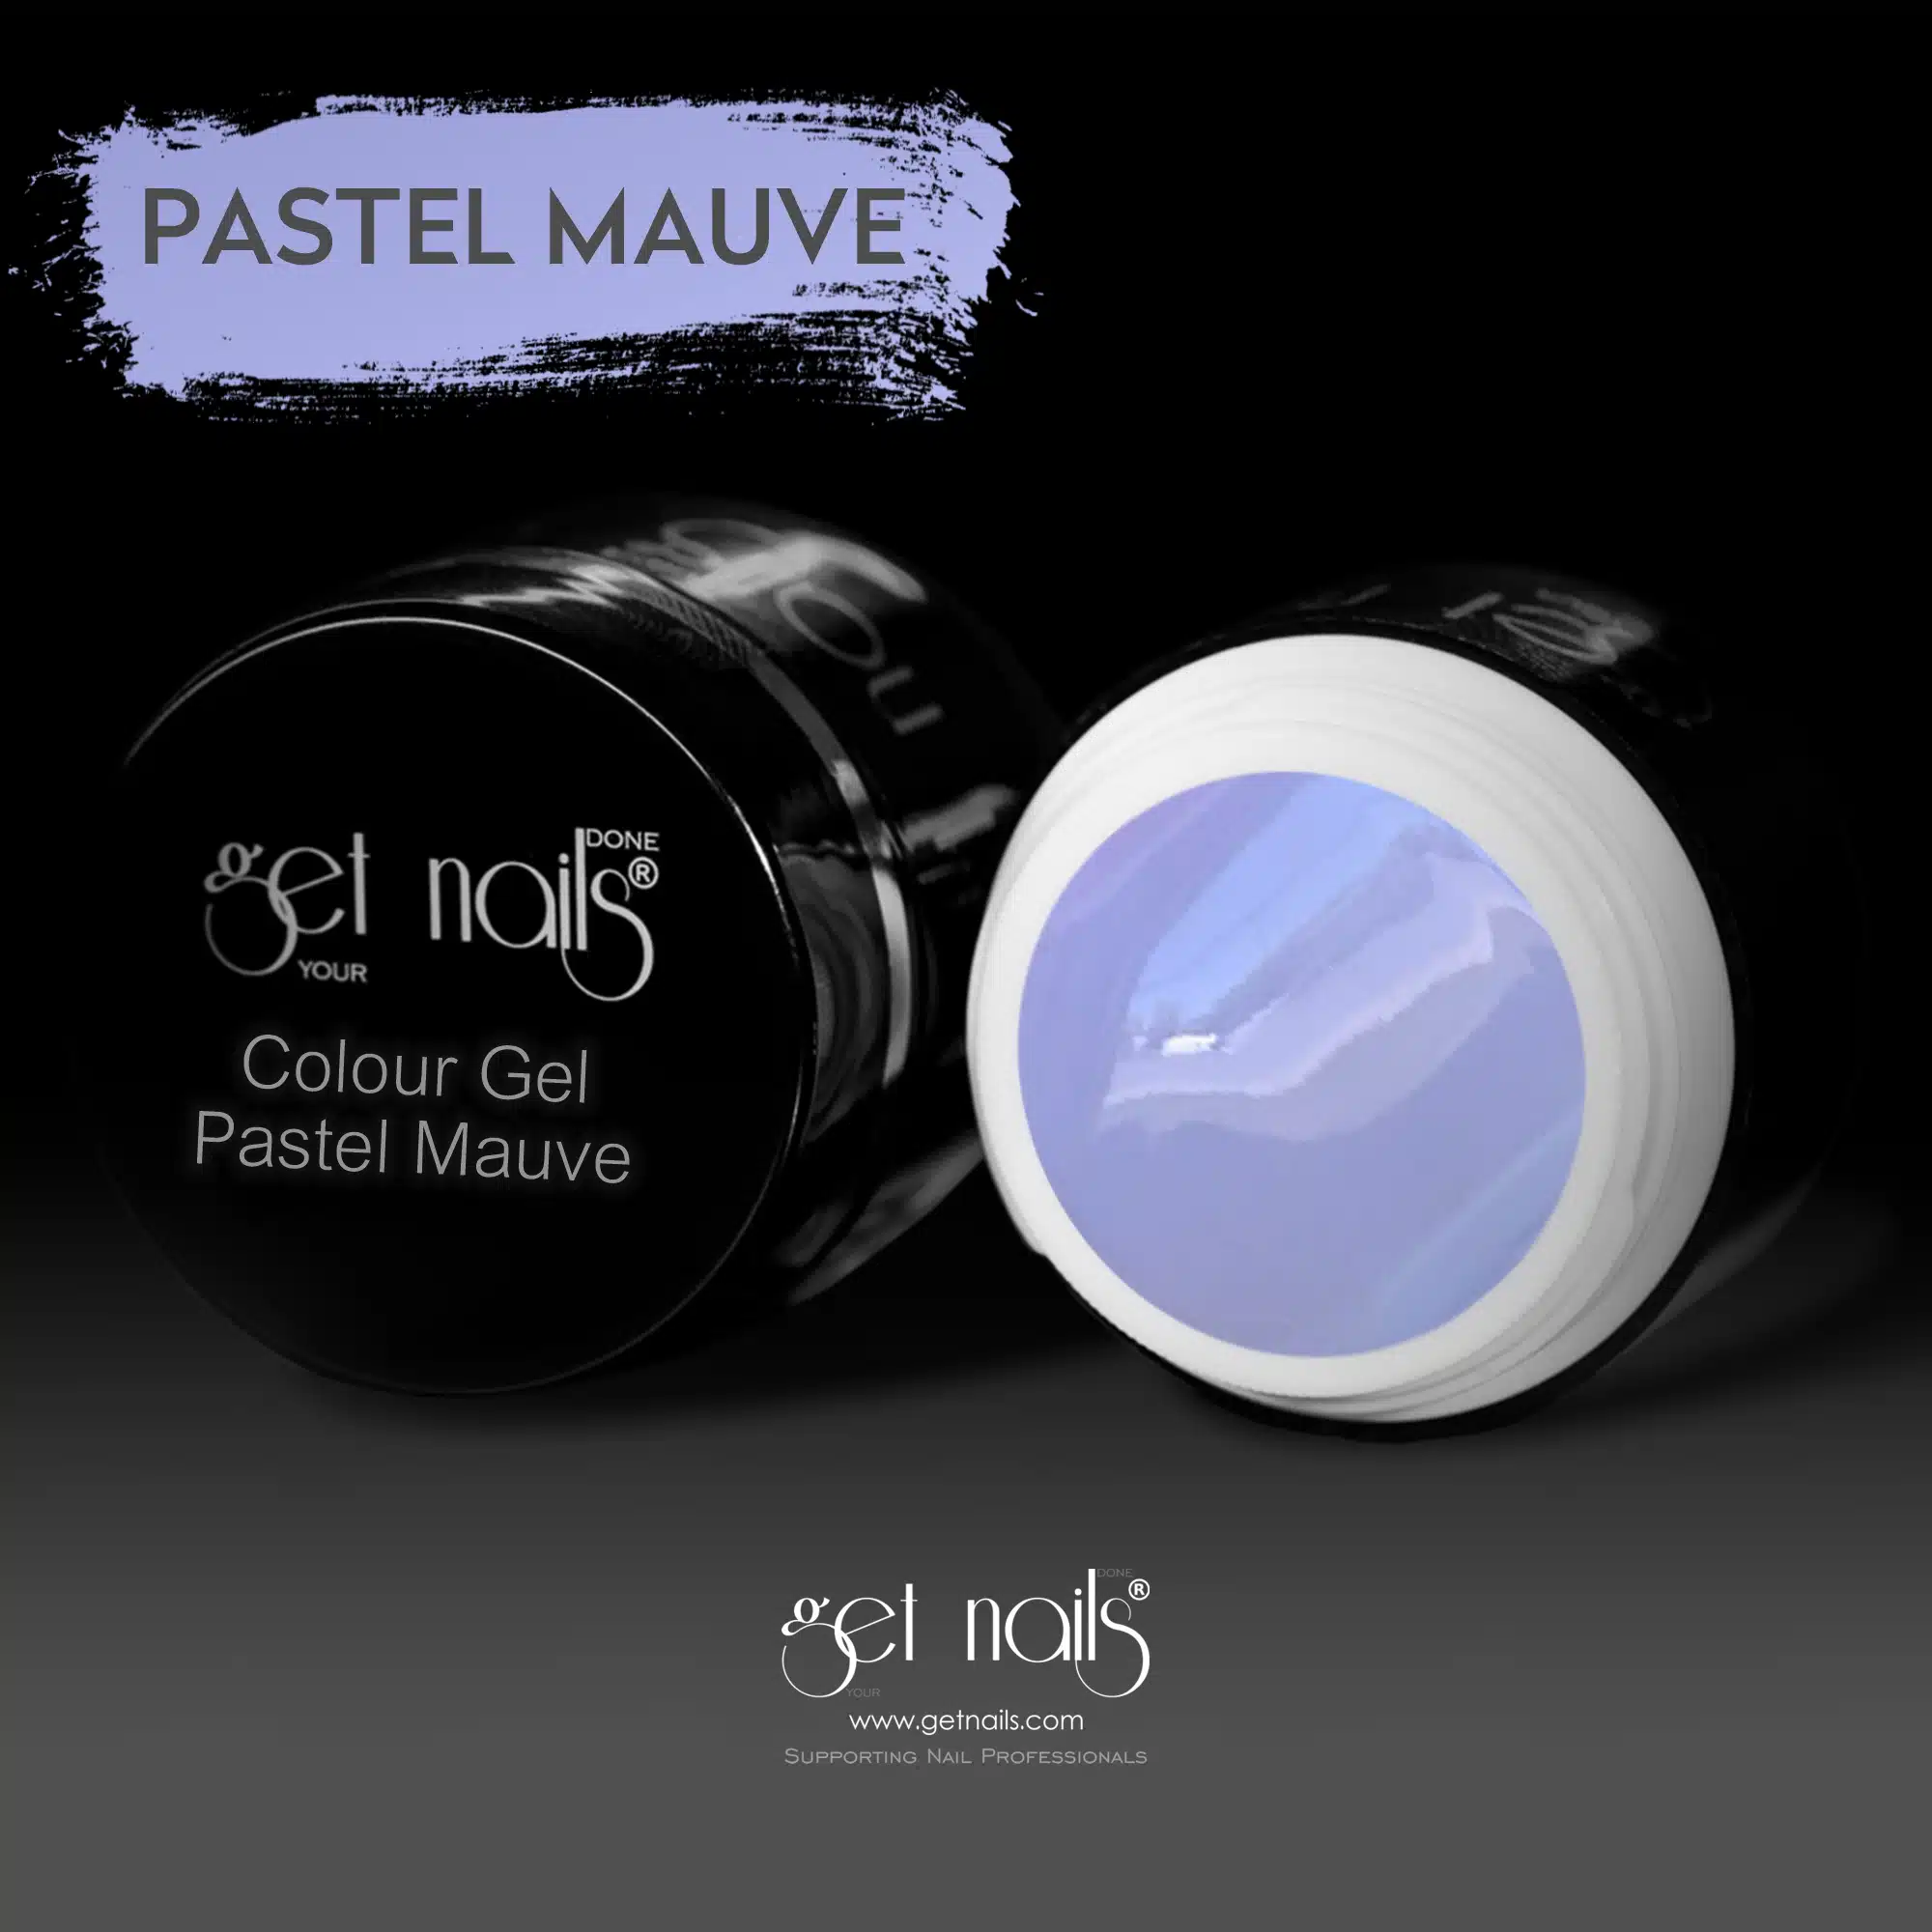 Get Nails Austria - Color Gel Pastel Mauve 5g